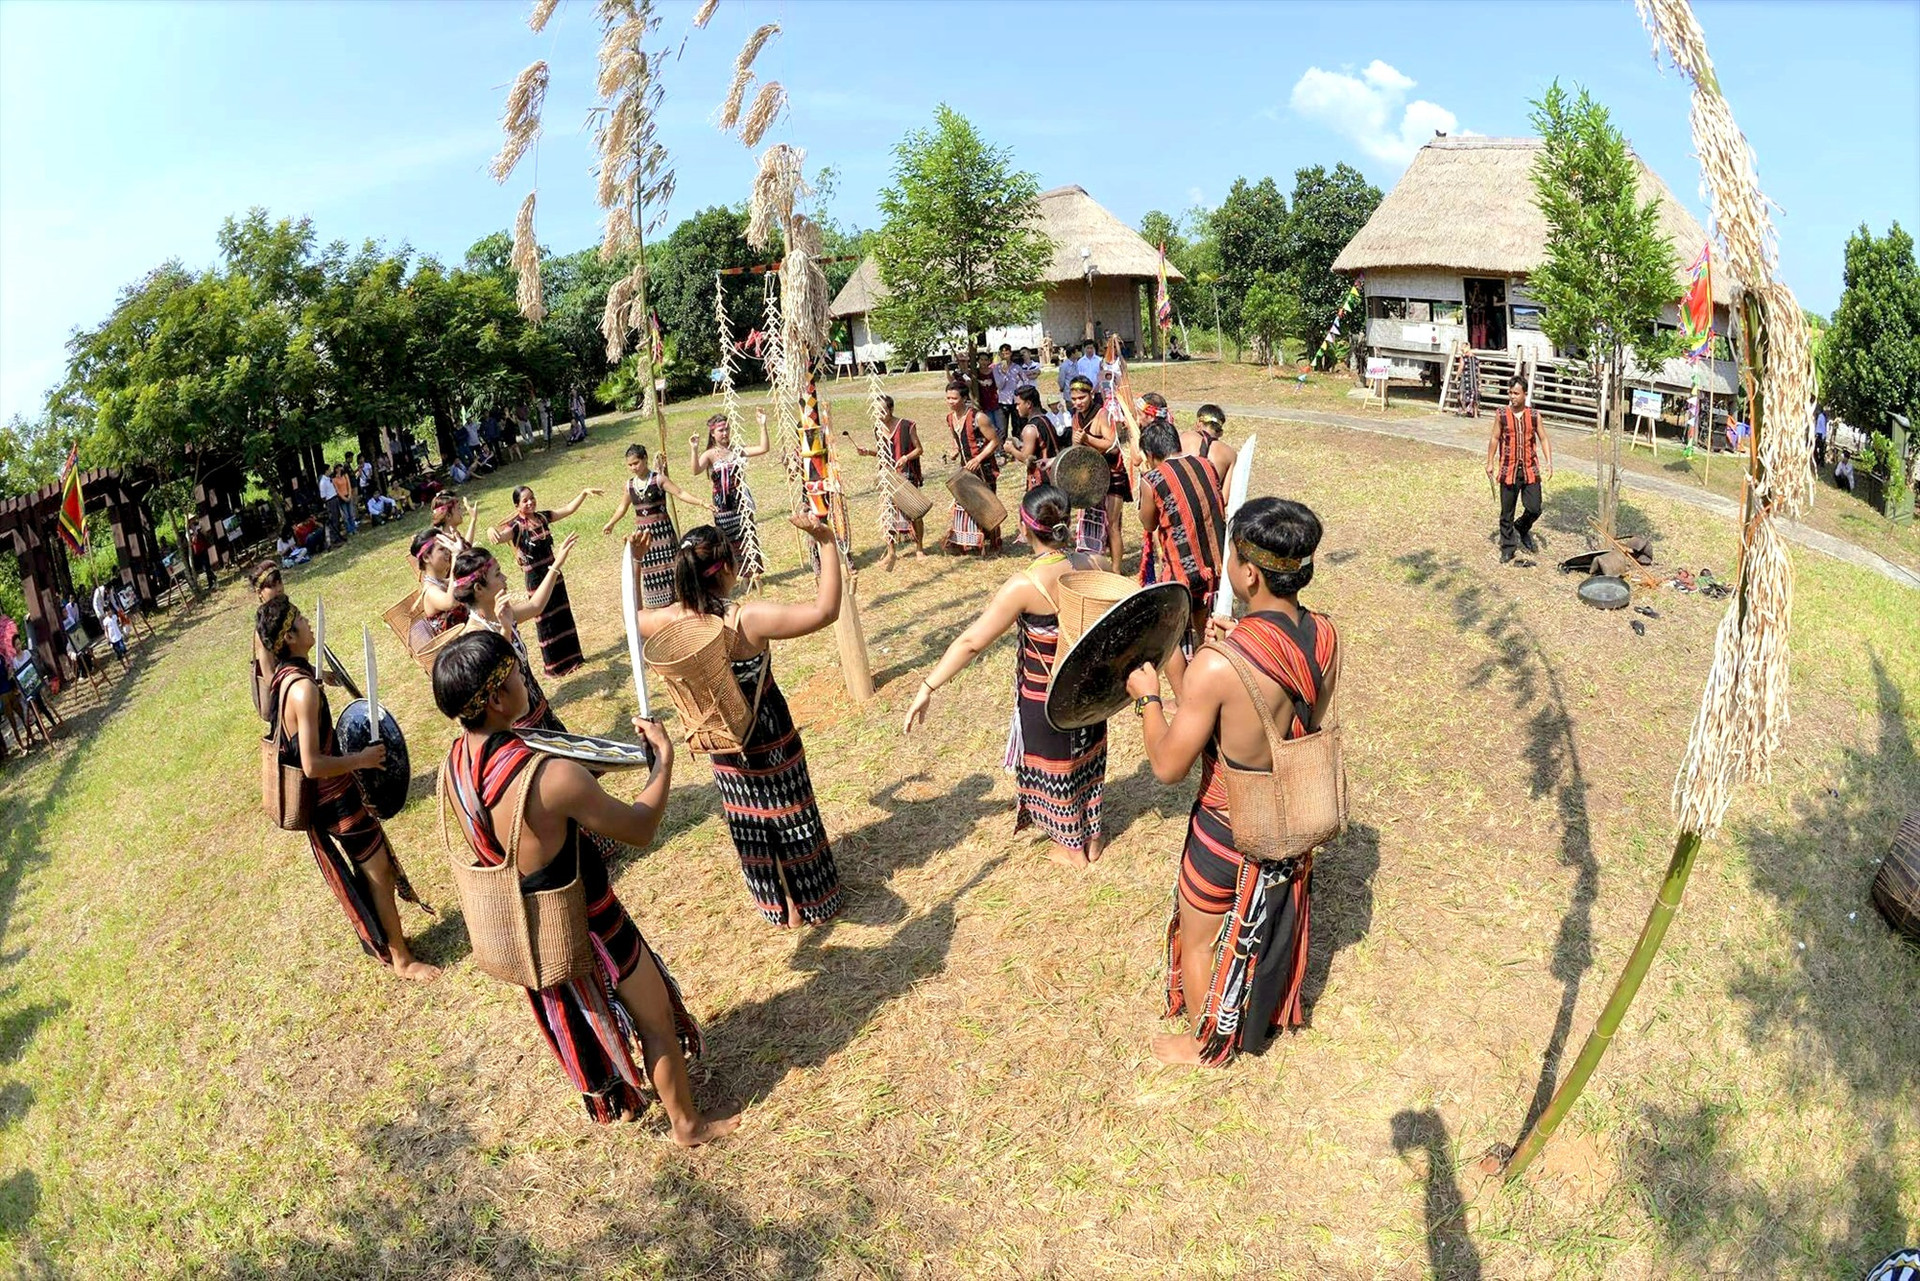 Cuộc trình diễn múa trống chiêng kết hợp nghi thức dựng cây nêu của đồng bào Cơ Tu hứa hẹn mang đến sự trải nghiệm độc đáo cho đồng hương phương Nam. Ảnh: Đ.N